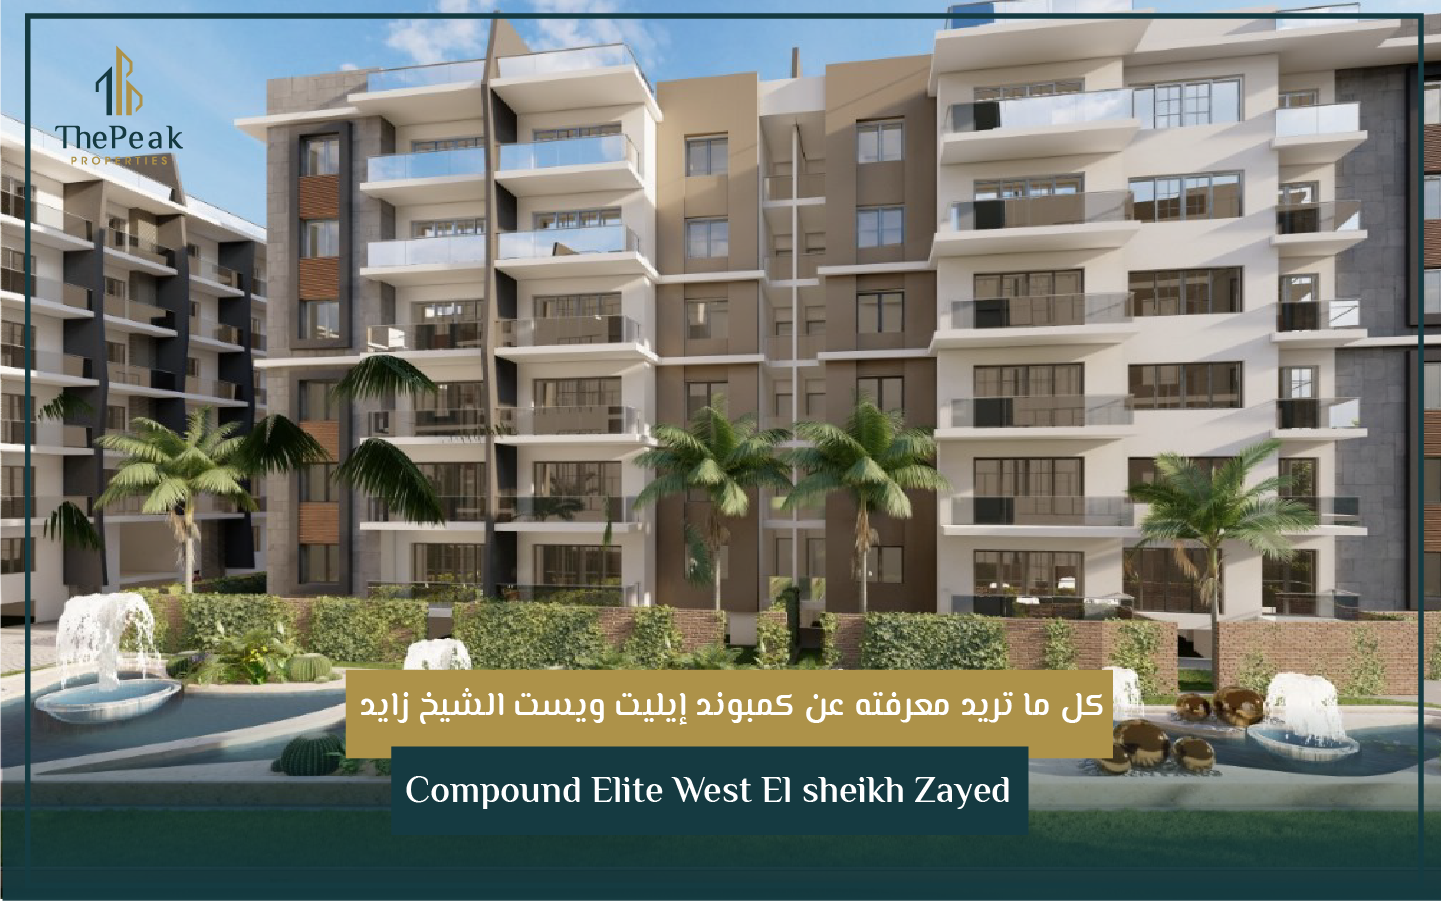 بنتهاوس للبيع بالتقسيط في الشيخ زايد  مساحة 194 متر + 95 متر  مقدم 15 % و تقسيط يصل إلي 8 سنوات  في مشروع Compound Elite West El sheikh Zayed | THE PEAK PROPERTIES